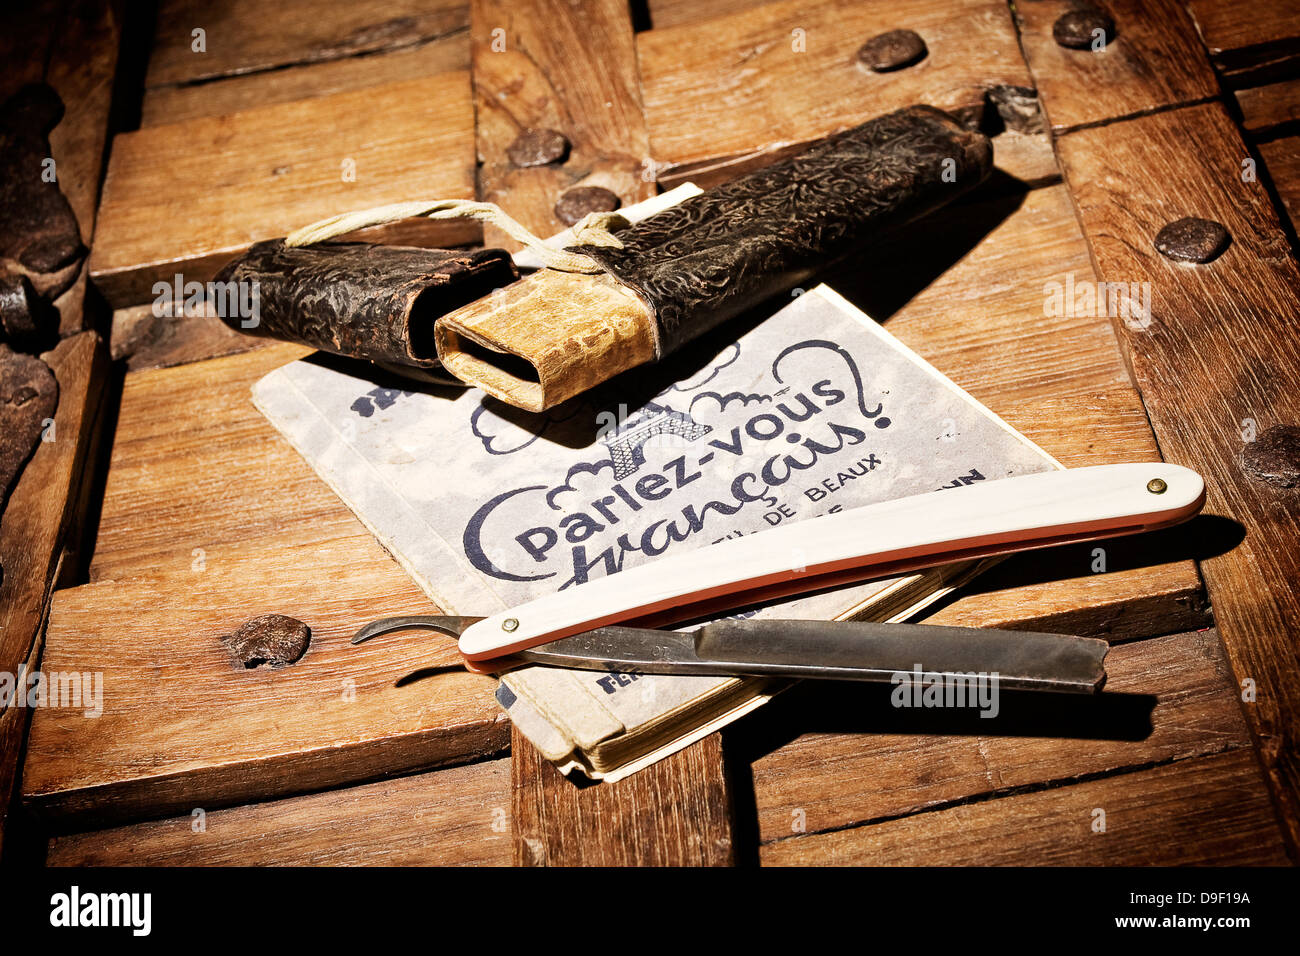 Rasierer mit Wörterbuch auf einer Holzkiste Rasiermesser mit einem Wörterbuch auf einem KUGELPUNZEN aus Holz Stockfoto